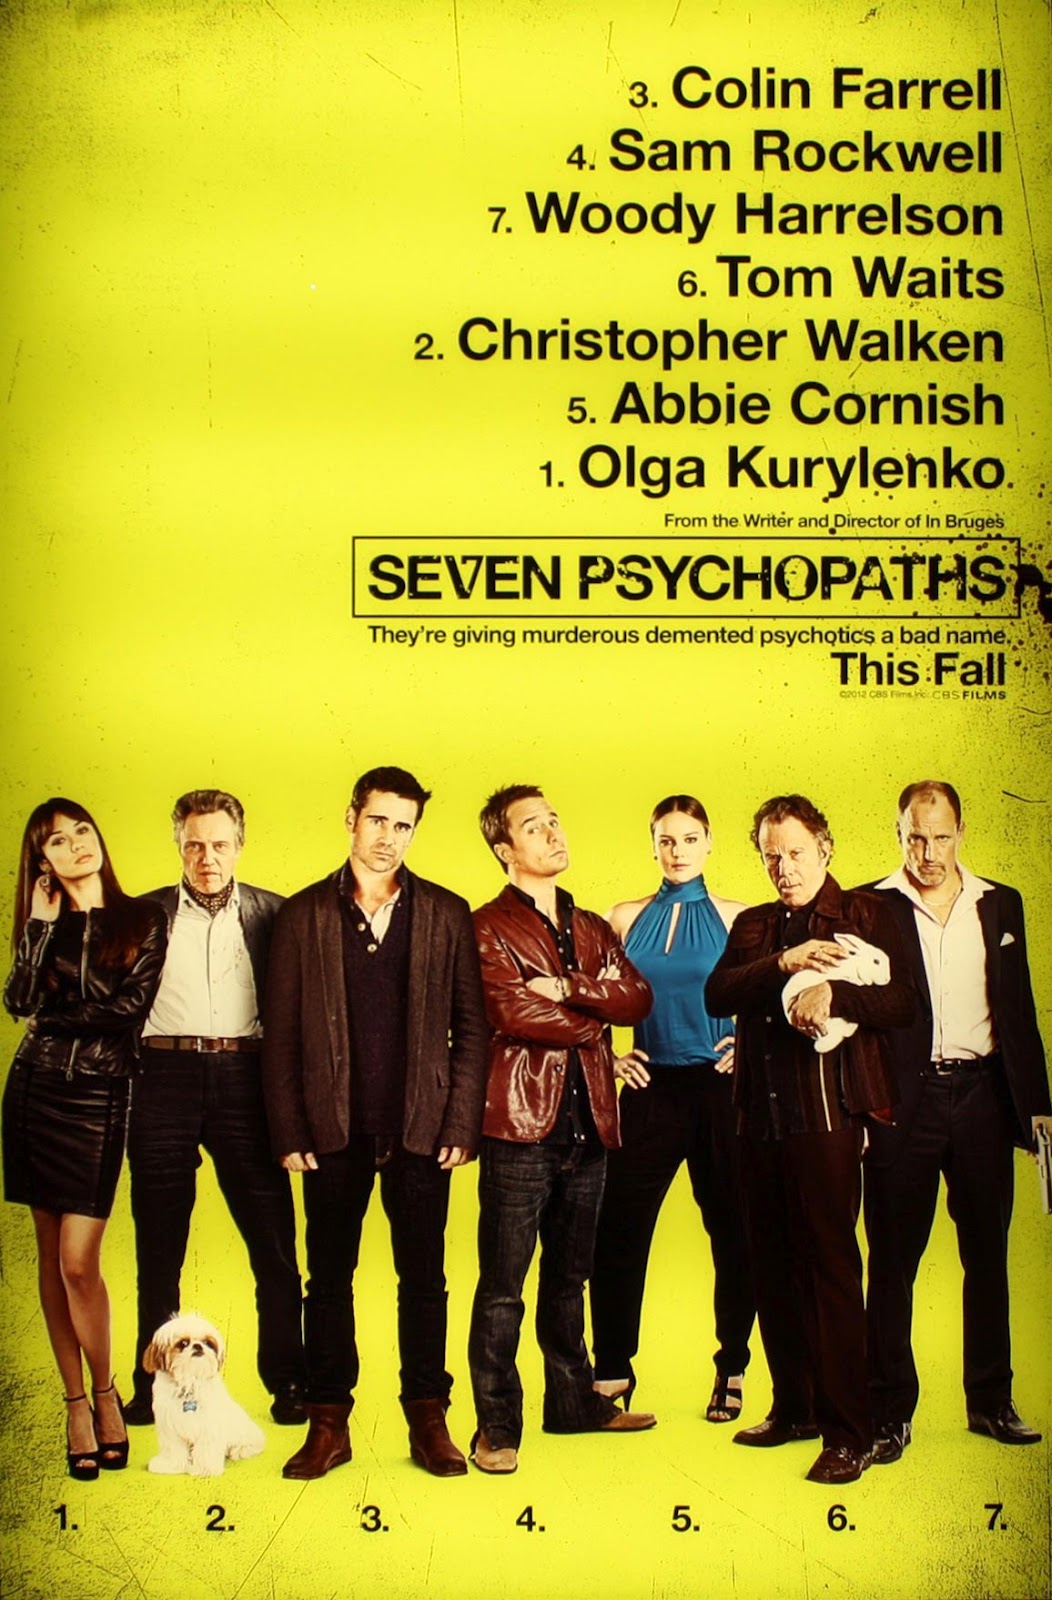 http://2.bp.blogspot.com/-u34mzXBrT_8/UCvscZ-P4gI/AAAAAAAAEqk/7WSLL2f_uzg/s1600/Seven-Psychopaths-poster-2012.jpg